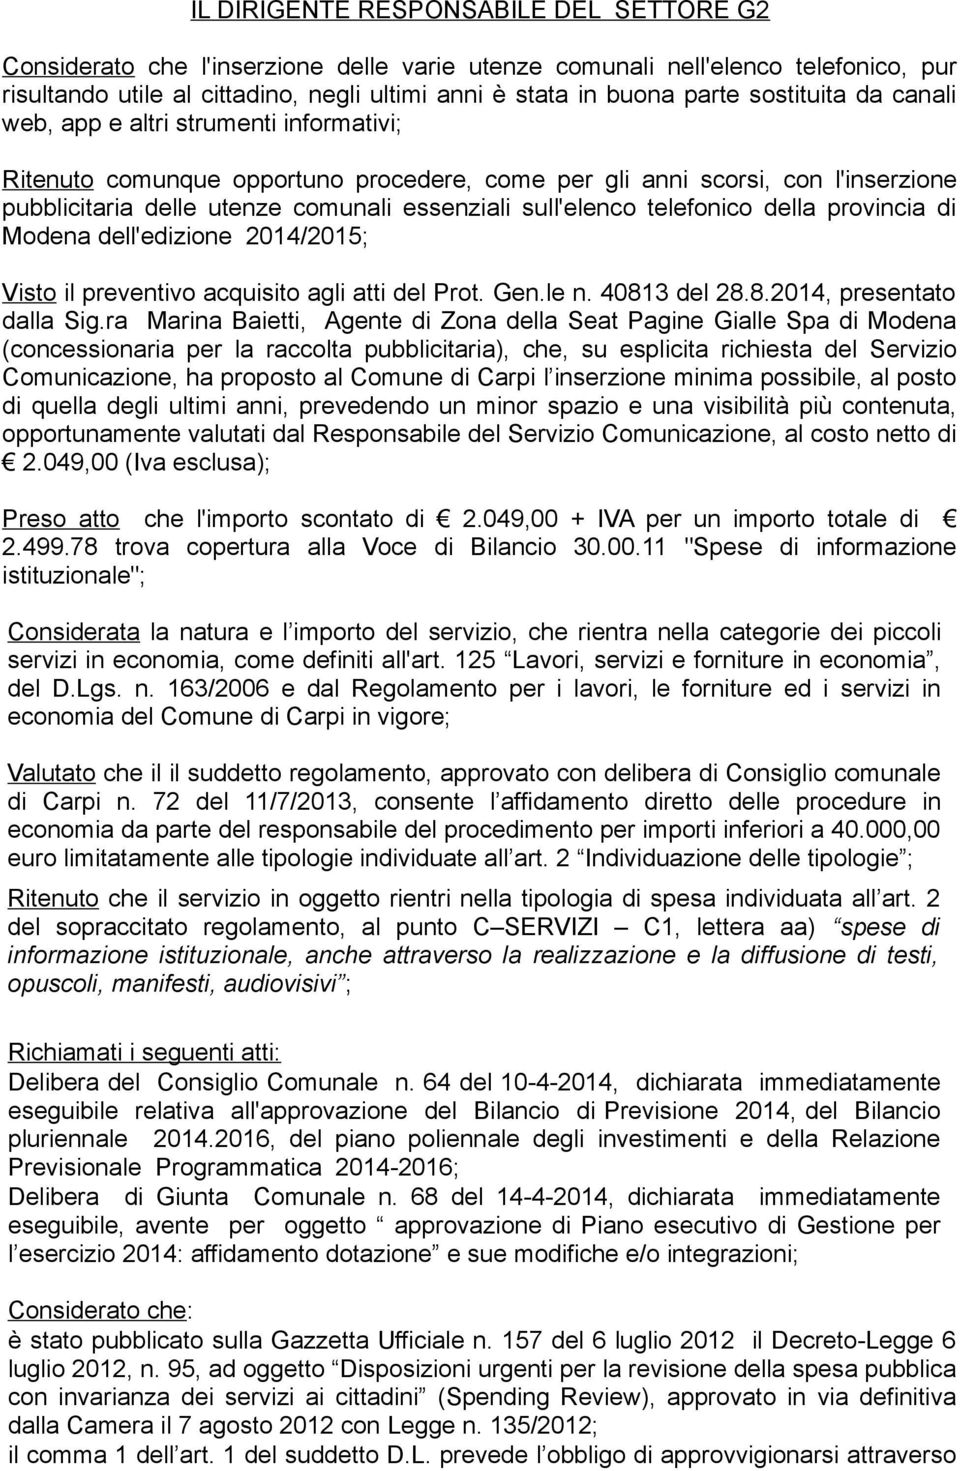 sull'elenco telefonico della provincia di Modena dell'edizione 2014/2015; Visto il preventivo acquisito agli atti del Prot. Gen.le n. 40813 del 28.8.2014, presentato dalla Sig.